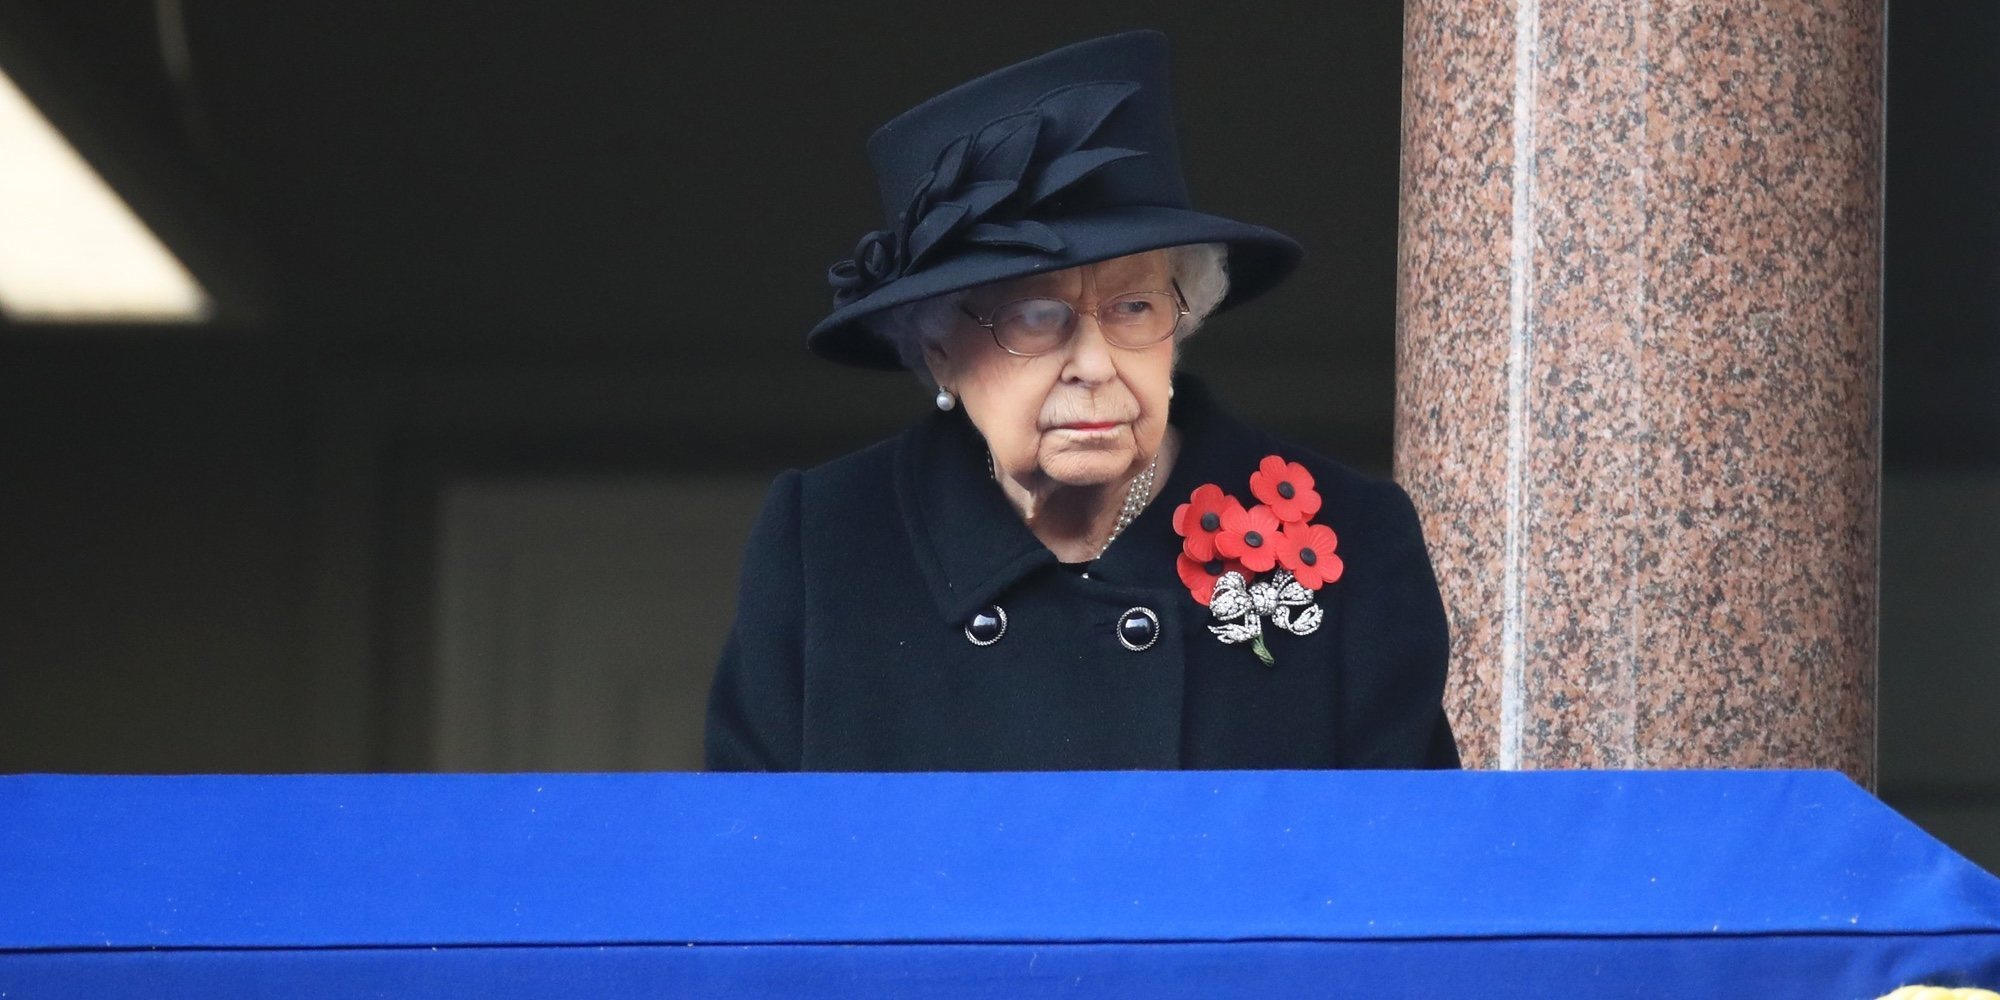 La otra muerte que entristeció a la Reina Isabel el día del funeral del Duque de Edimburgo